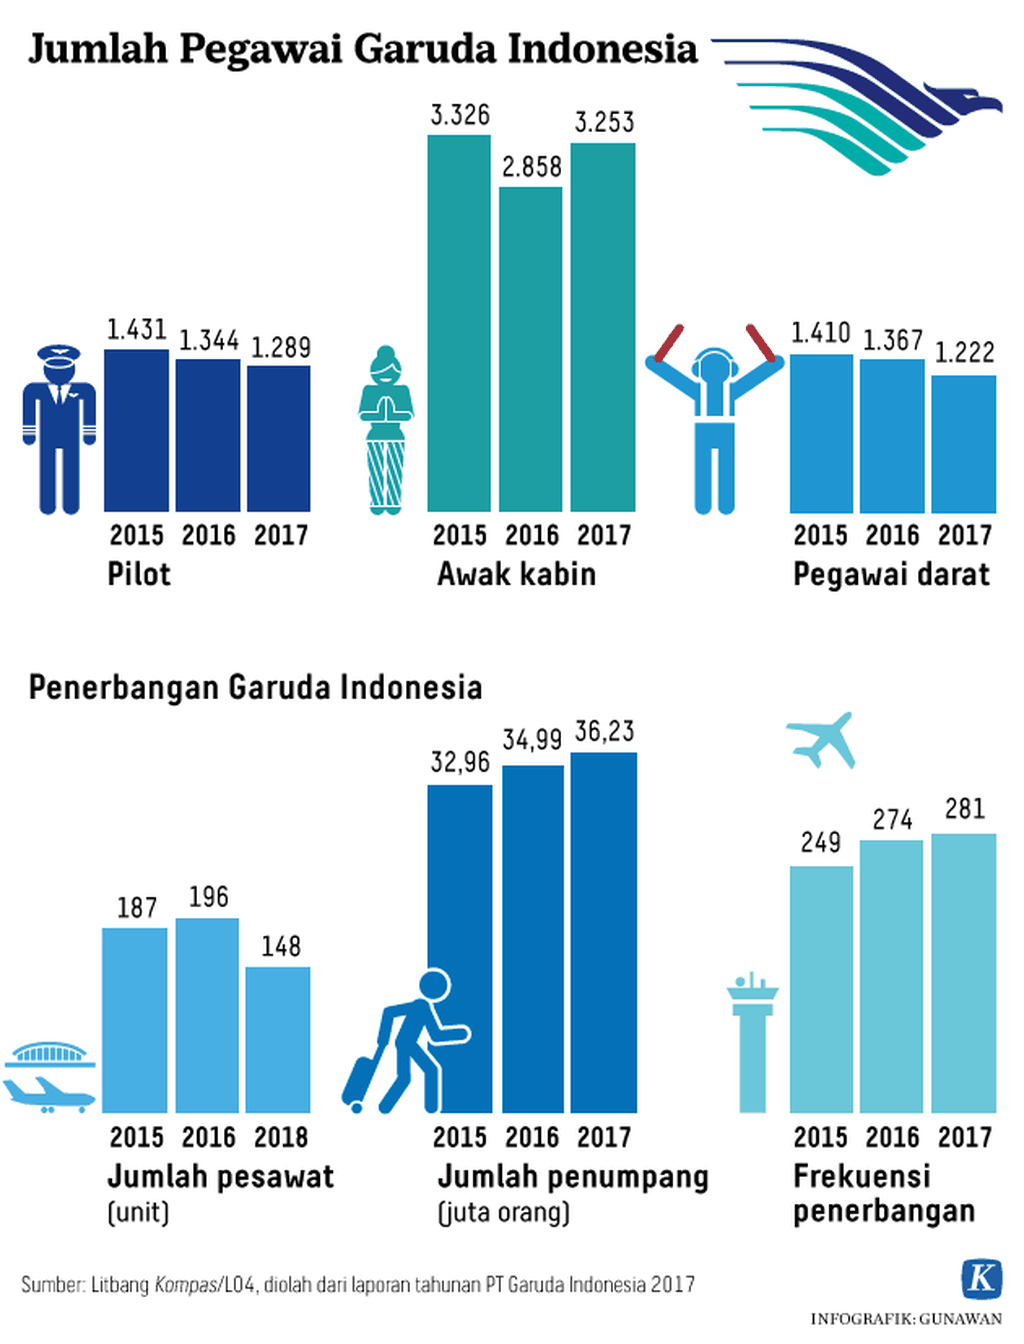 https://cdn-assetd.kompas.id/bIBUNykp8y_y3yT-Z9UgVIHddB8=/1024x1344/https%3A%2F%2Fkompas.id%2Fwp-content%2Fuploads%2F2019%2F01%2F20180606_GKT_Jumlah-Pilot-Garuda-Indonesia-Awak-dan-Armada-Pesawat-Kompas-ID-W.png